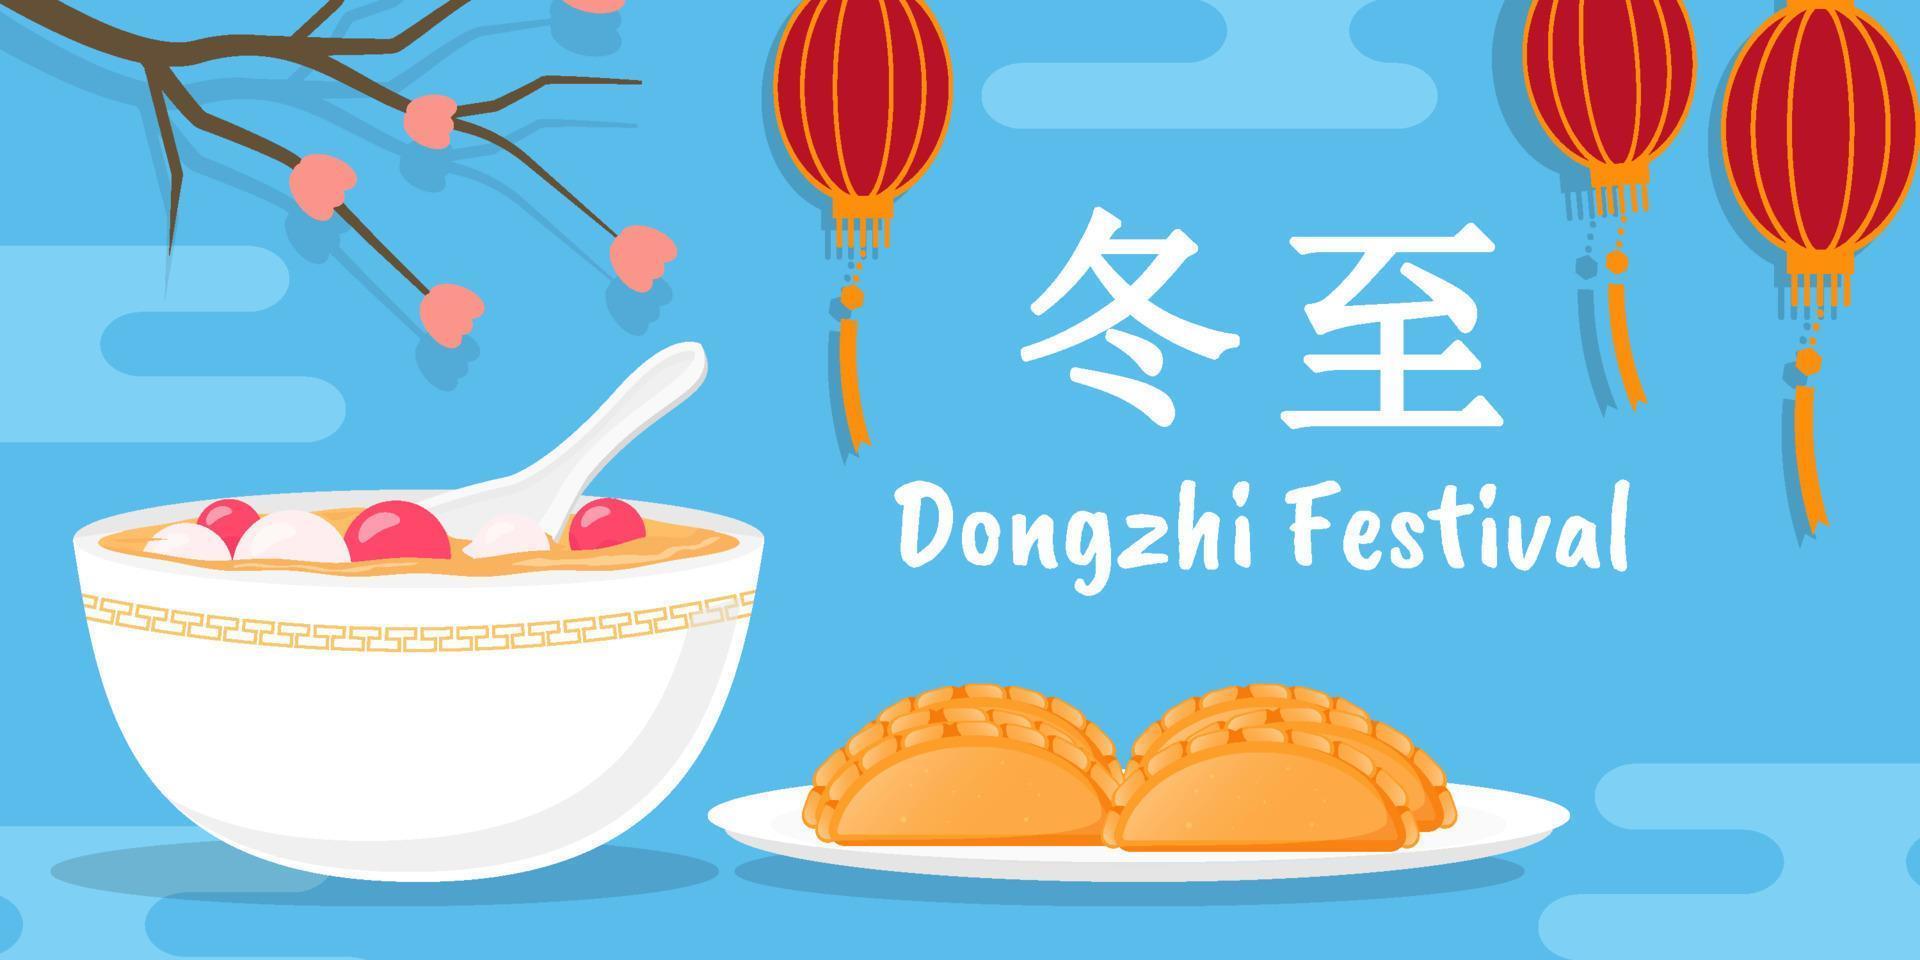 ilustração de banner do festival dongzhi plano em fundo azul vetor